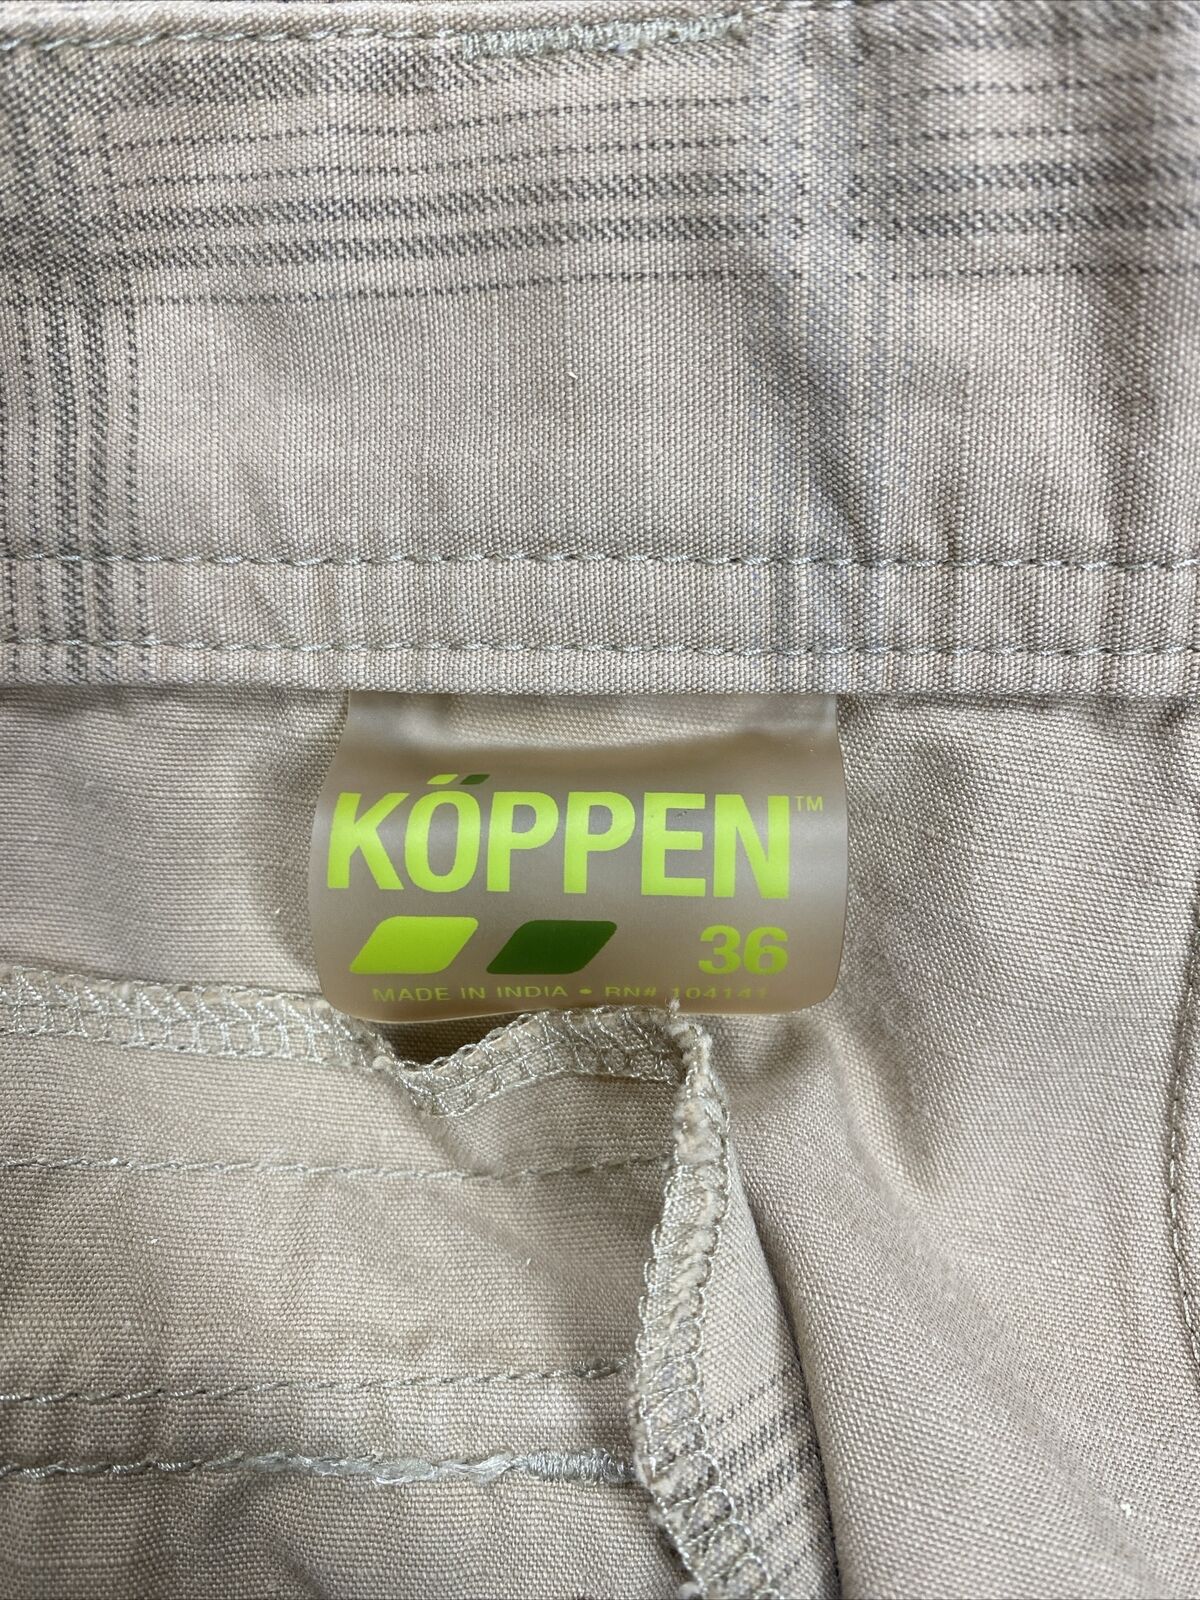 Koppen Men's Beige Plaid Cotton Blend Cargo Shorts - 36